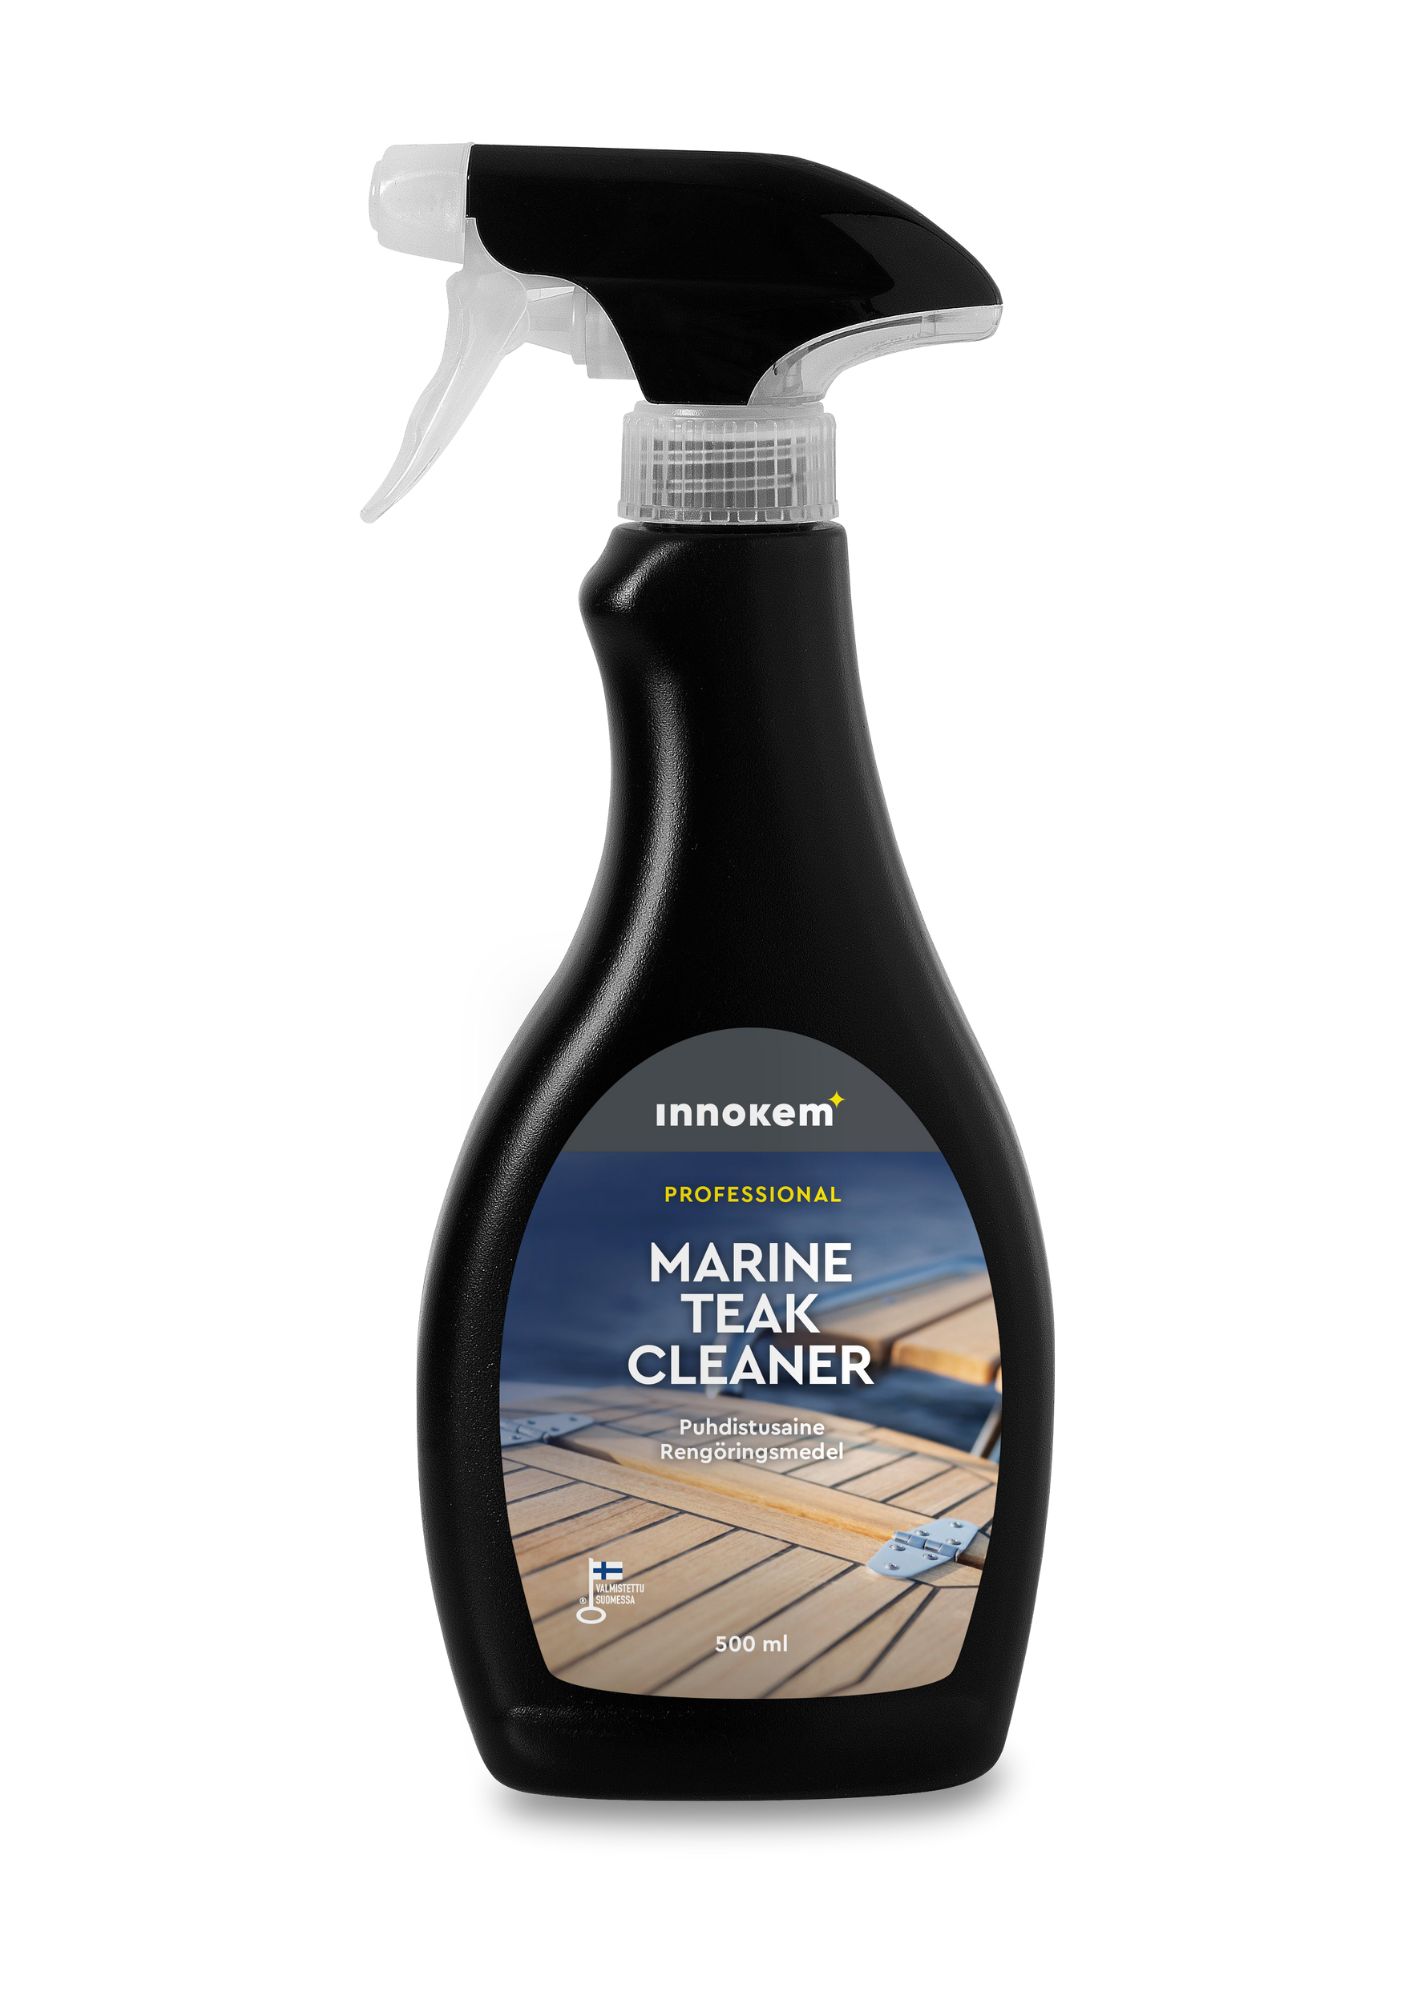 innokem marine teak cleaner puhdistusaine